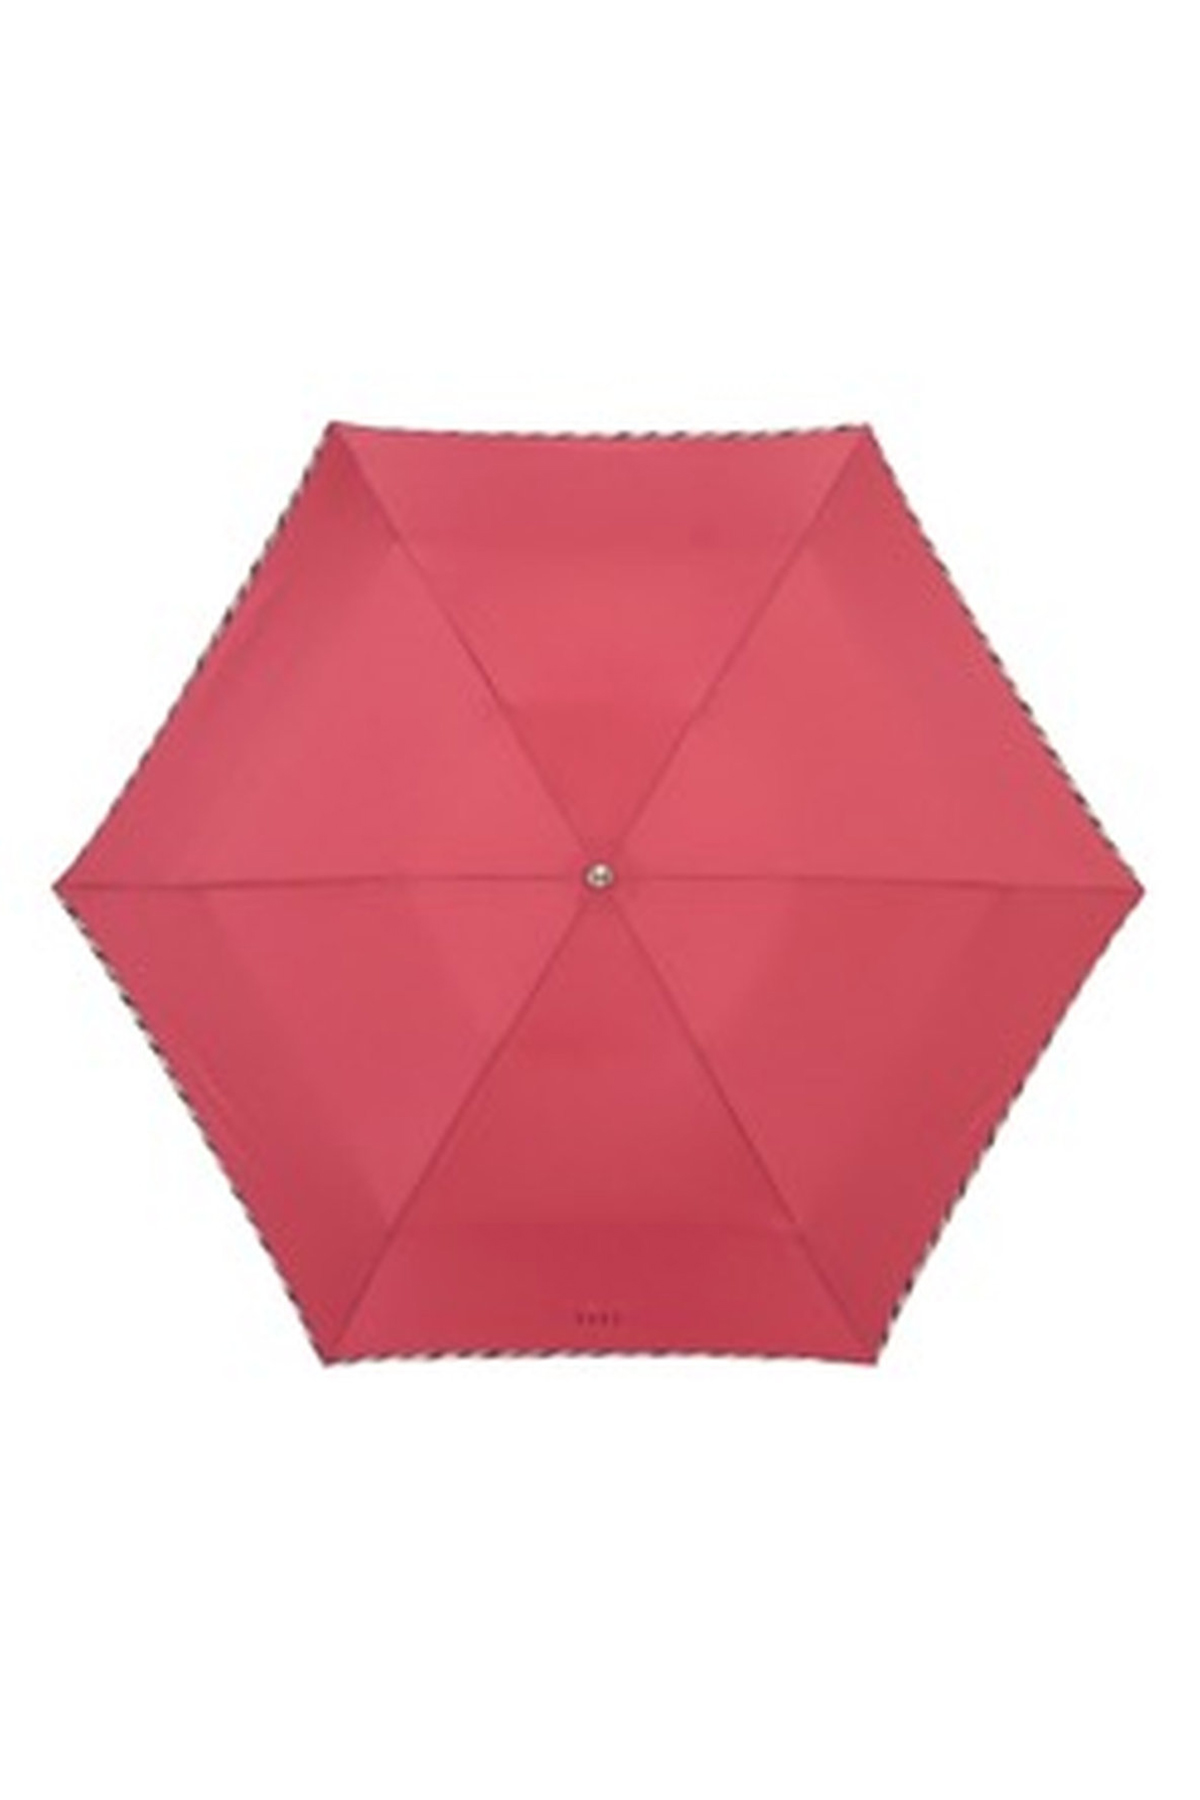 【雨傘】折りたたみ傘無地パイピング 詳細画像 5